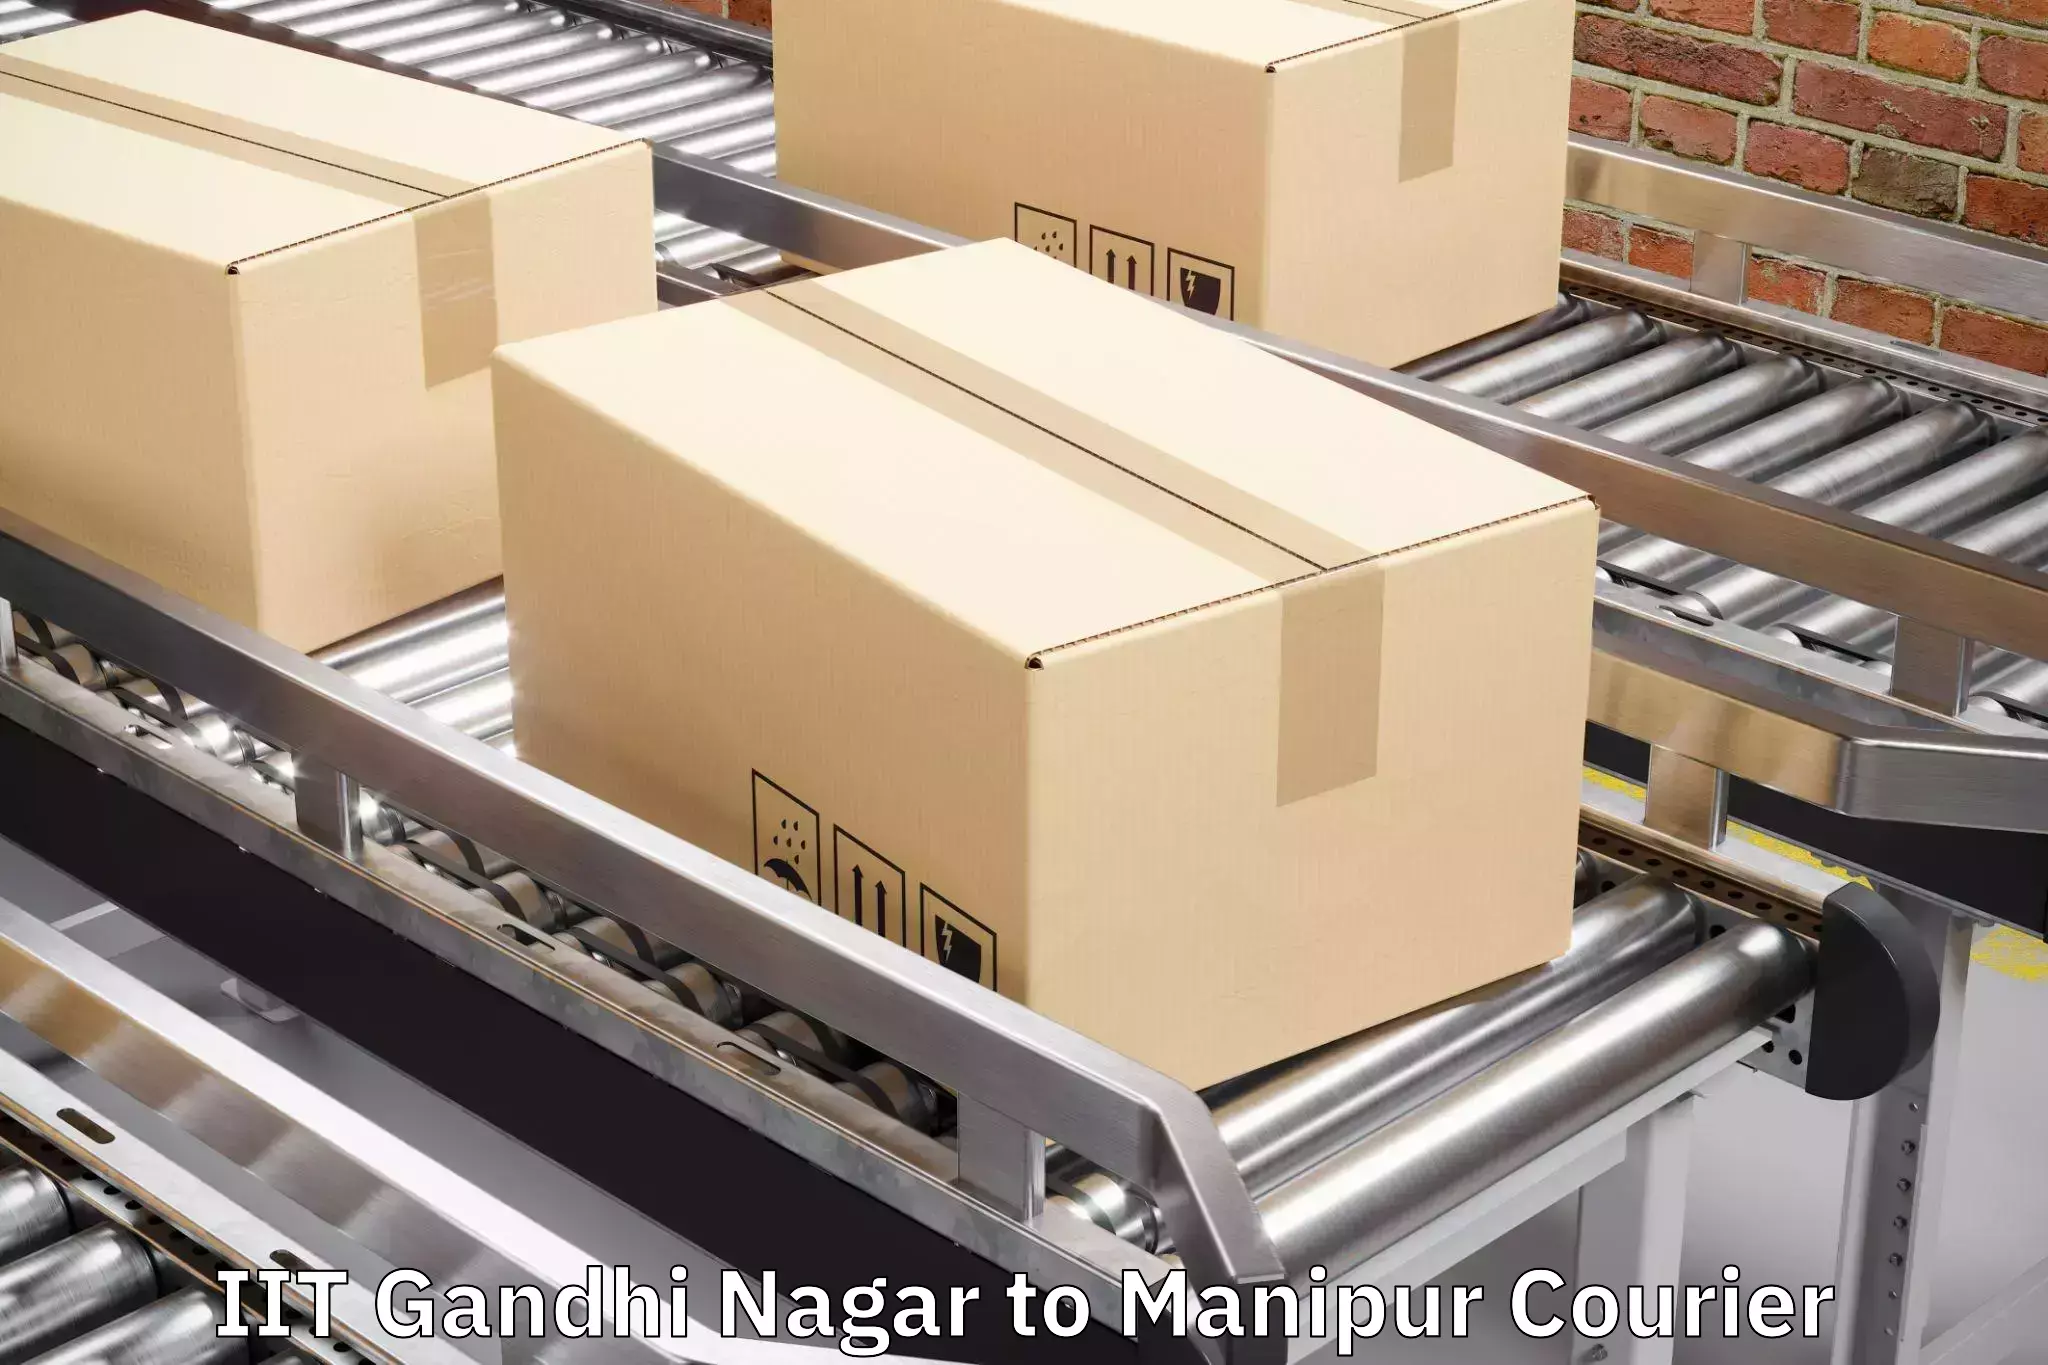 Baggage courier insights IIT Gandhi Nagar to Kanti